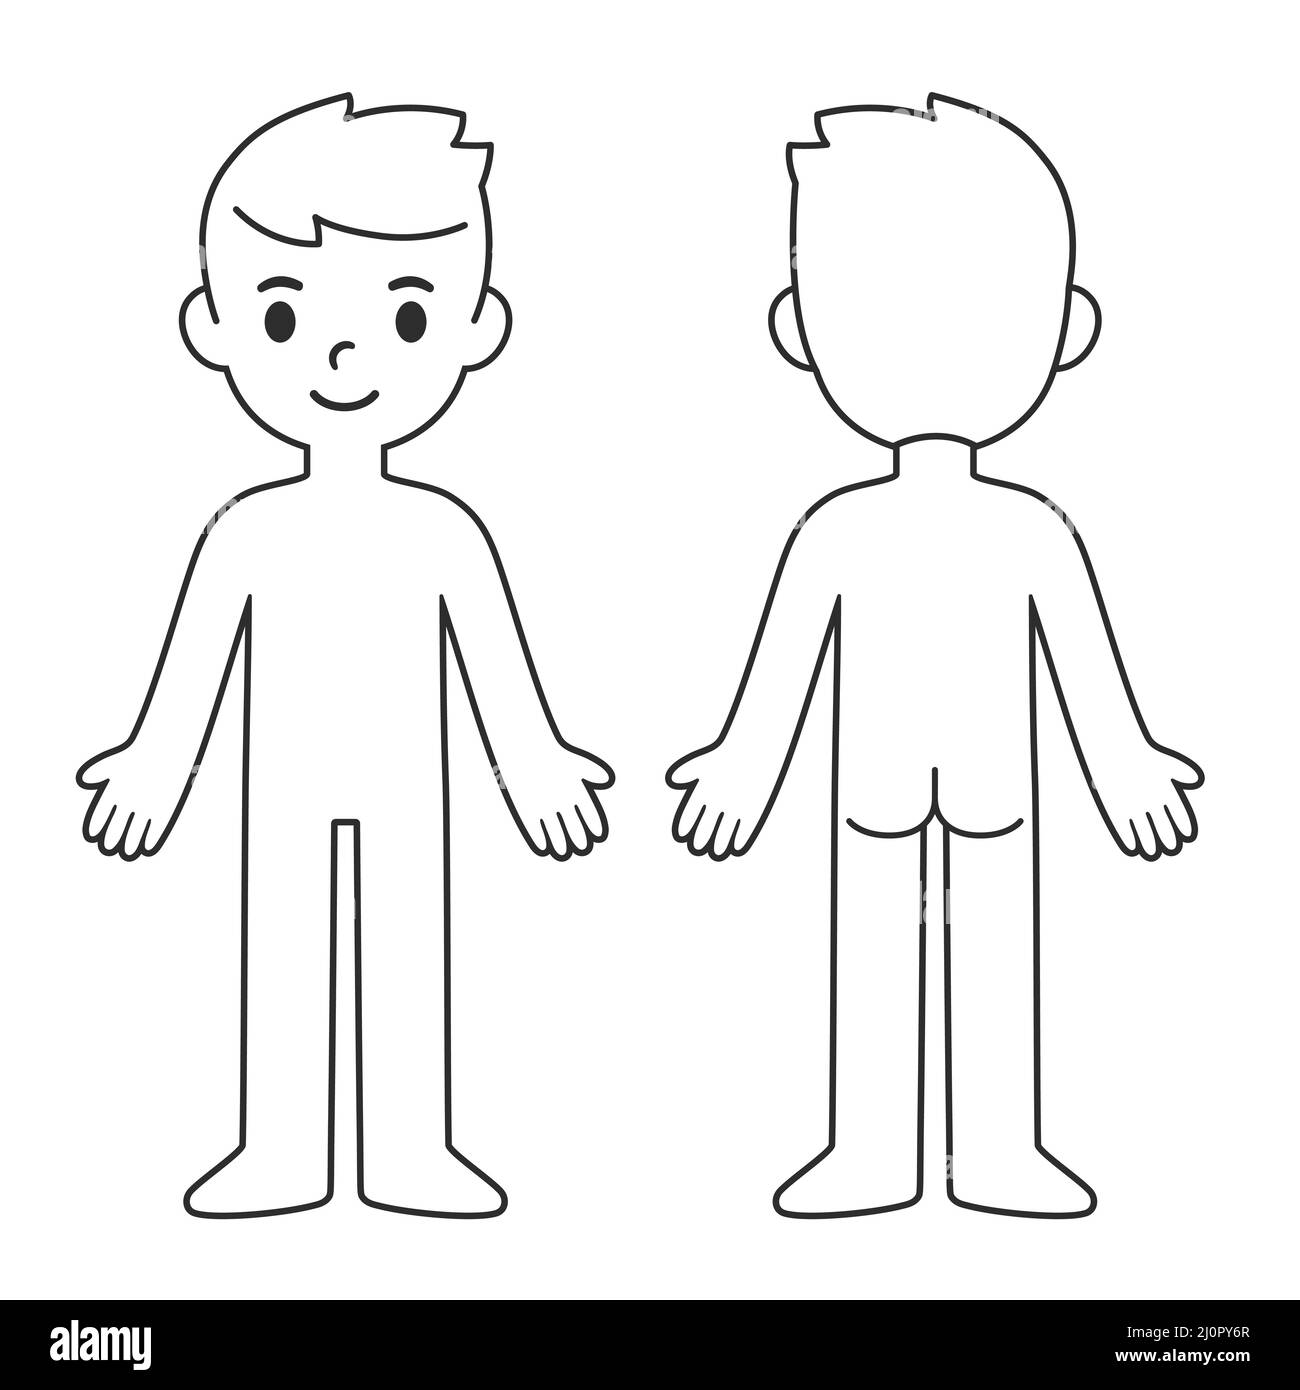 Cartoon-Body-Chart für Kinder, Vorder- und Rückansicht. Leere Vorlage für den Body Outline des Jungen. Isolierte Vektordarstellung. Stock Vektor